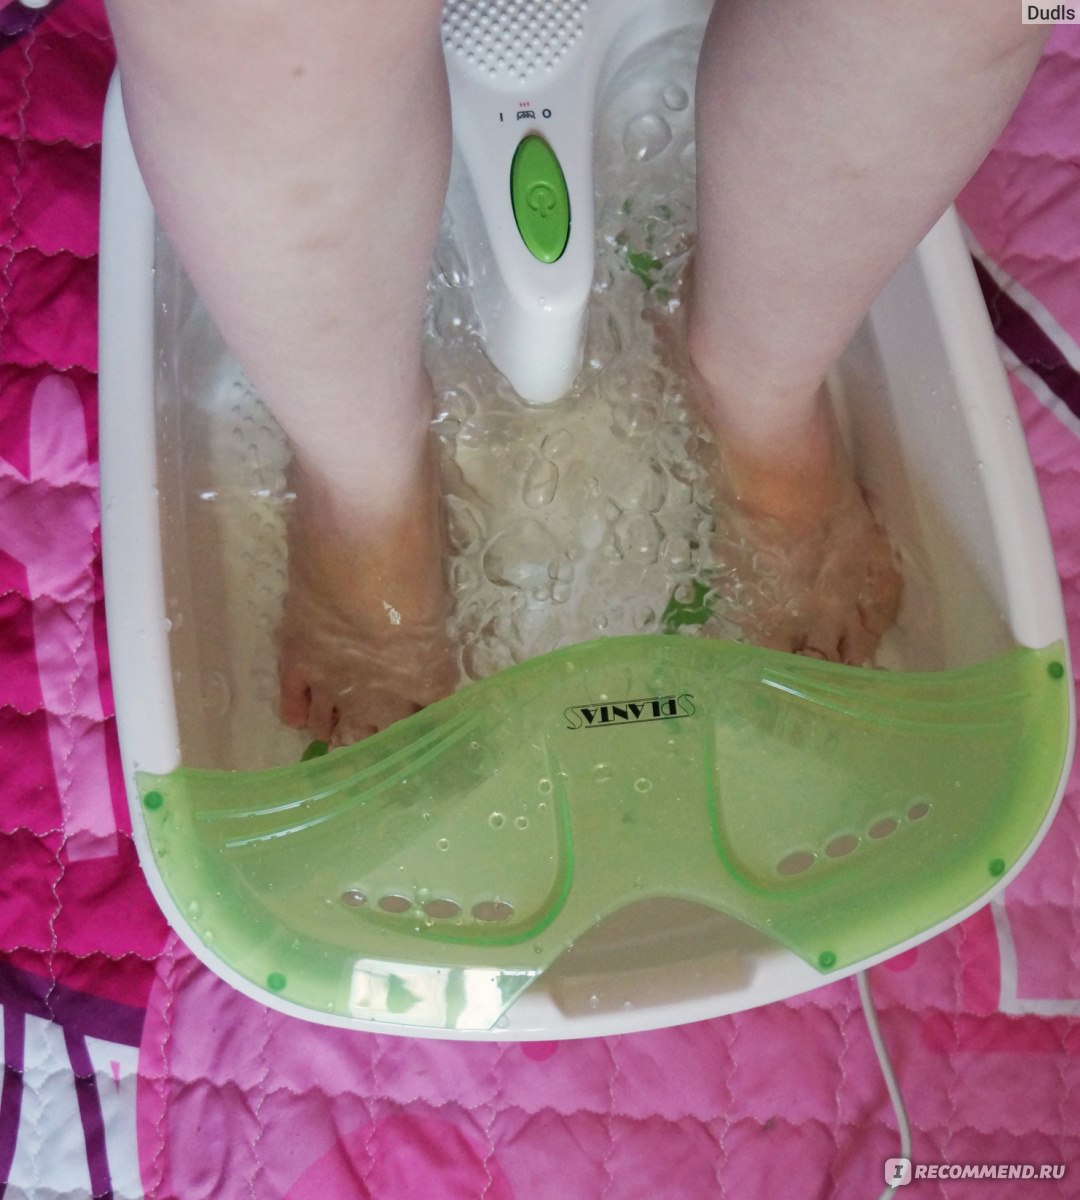 Ванночка planta. Массажная ванночка planta MFS-200v Spa Salon. Планта ванночка для ног. Ванночка для ног с массажными шариками. Ванночка для массажа ног отзывы.